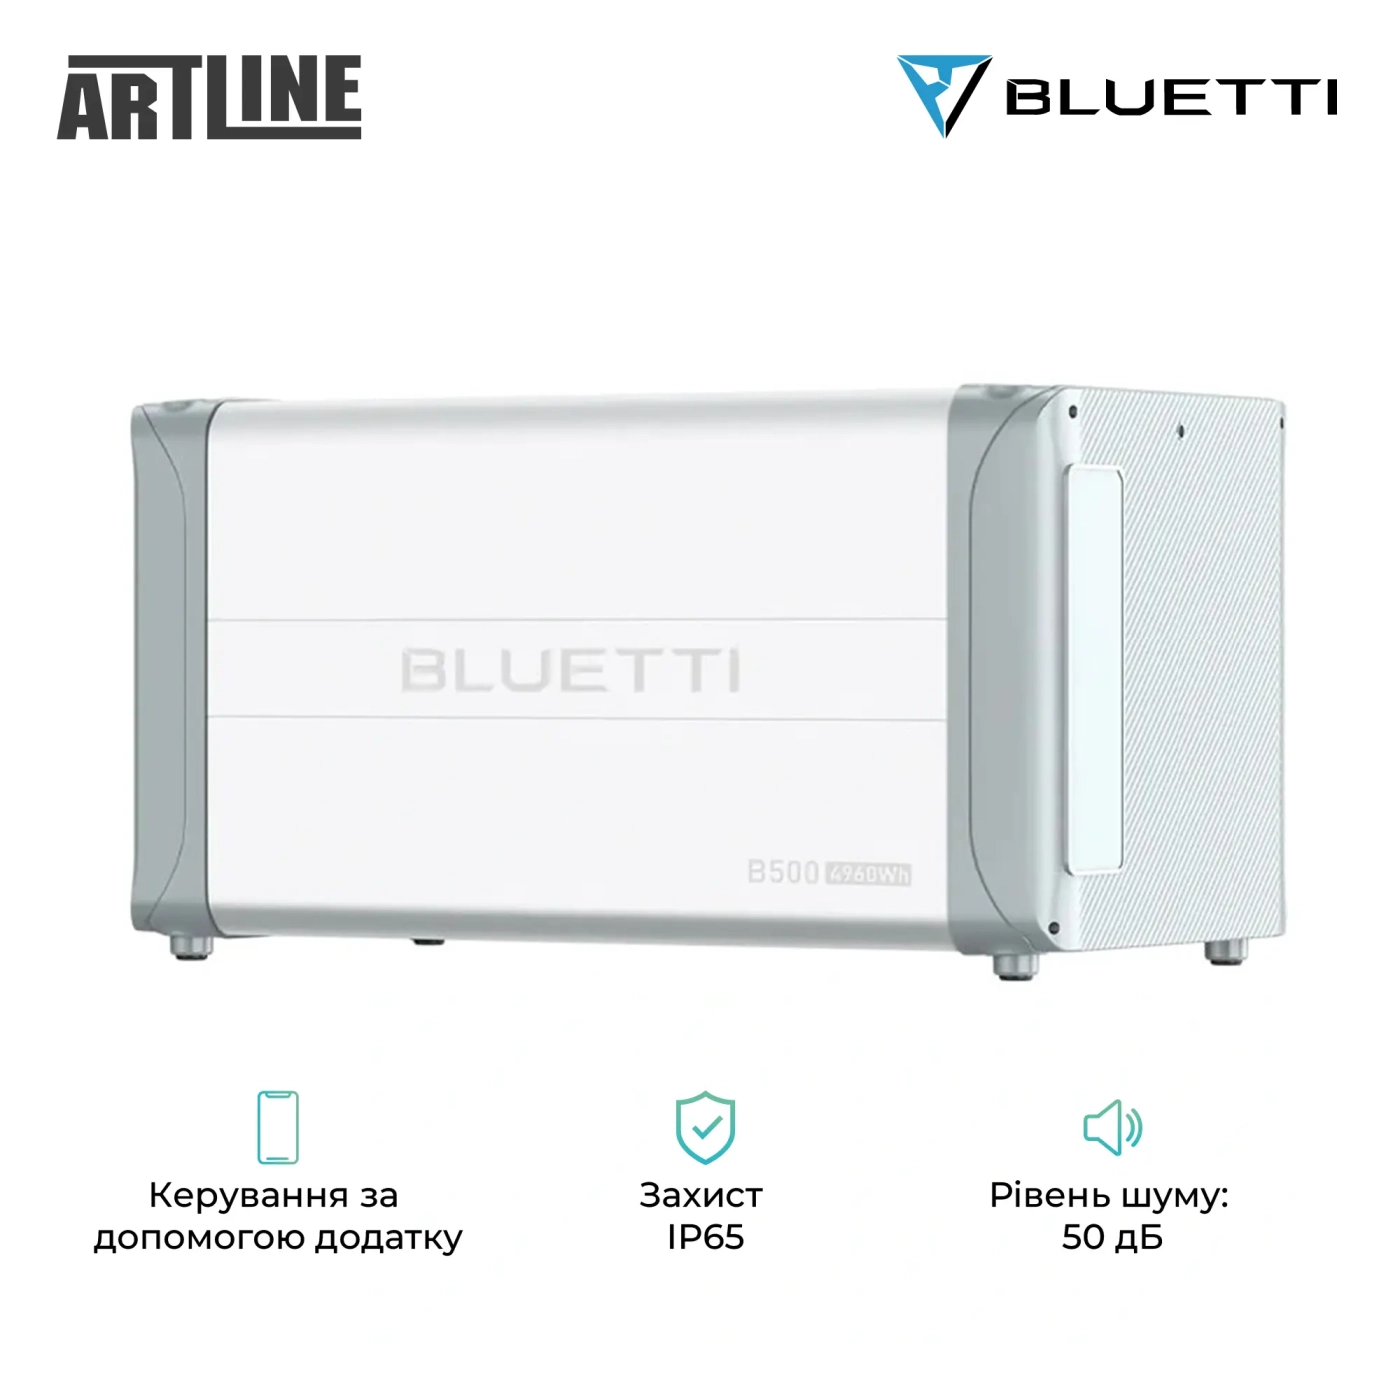 Купить Система хранения энергии Bluetti 2xEP600+3xB500 6000W 14880Wh (EP600+3xB500) - фото 4